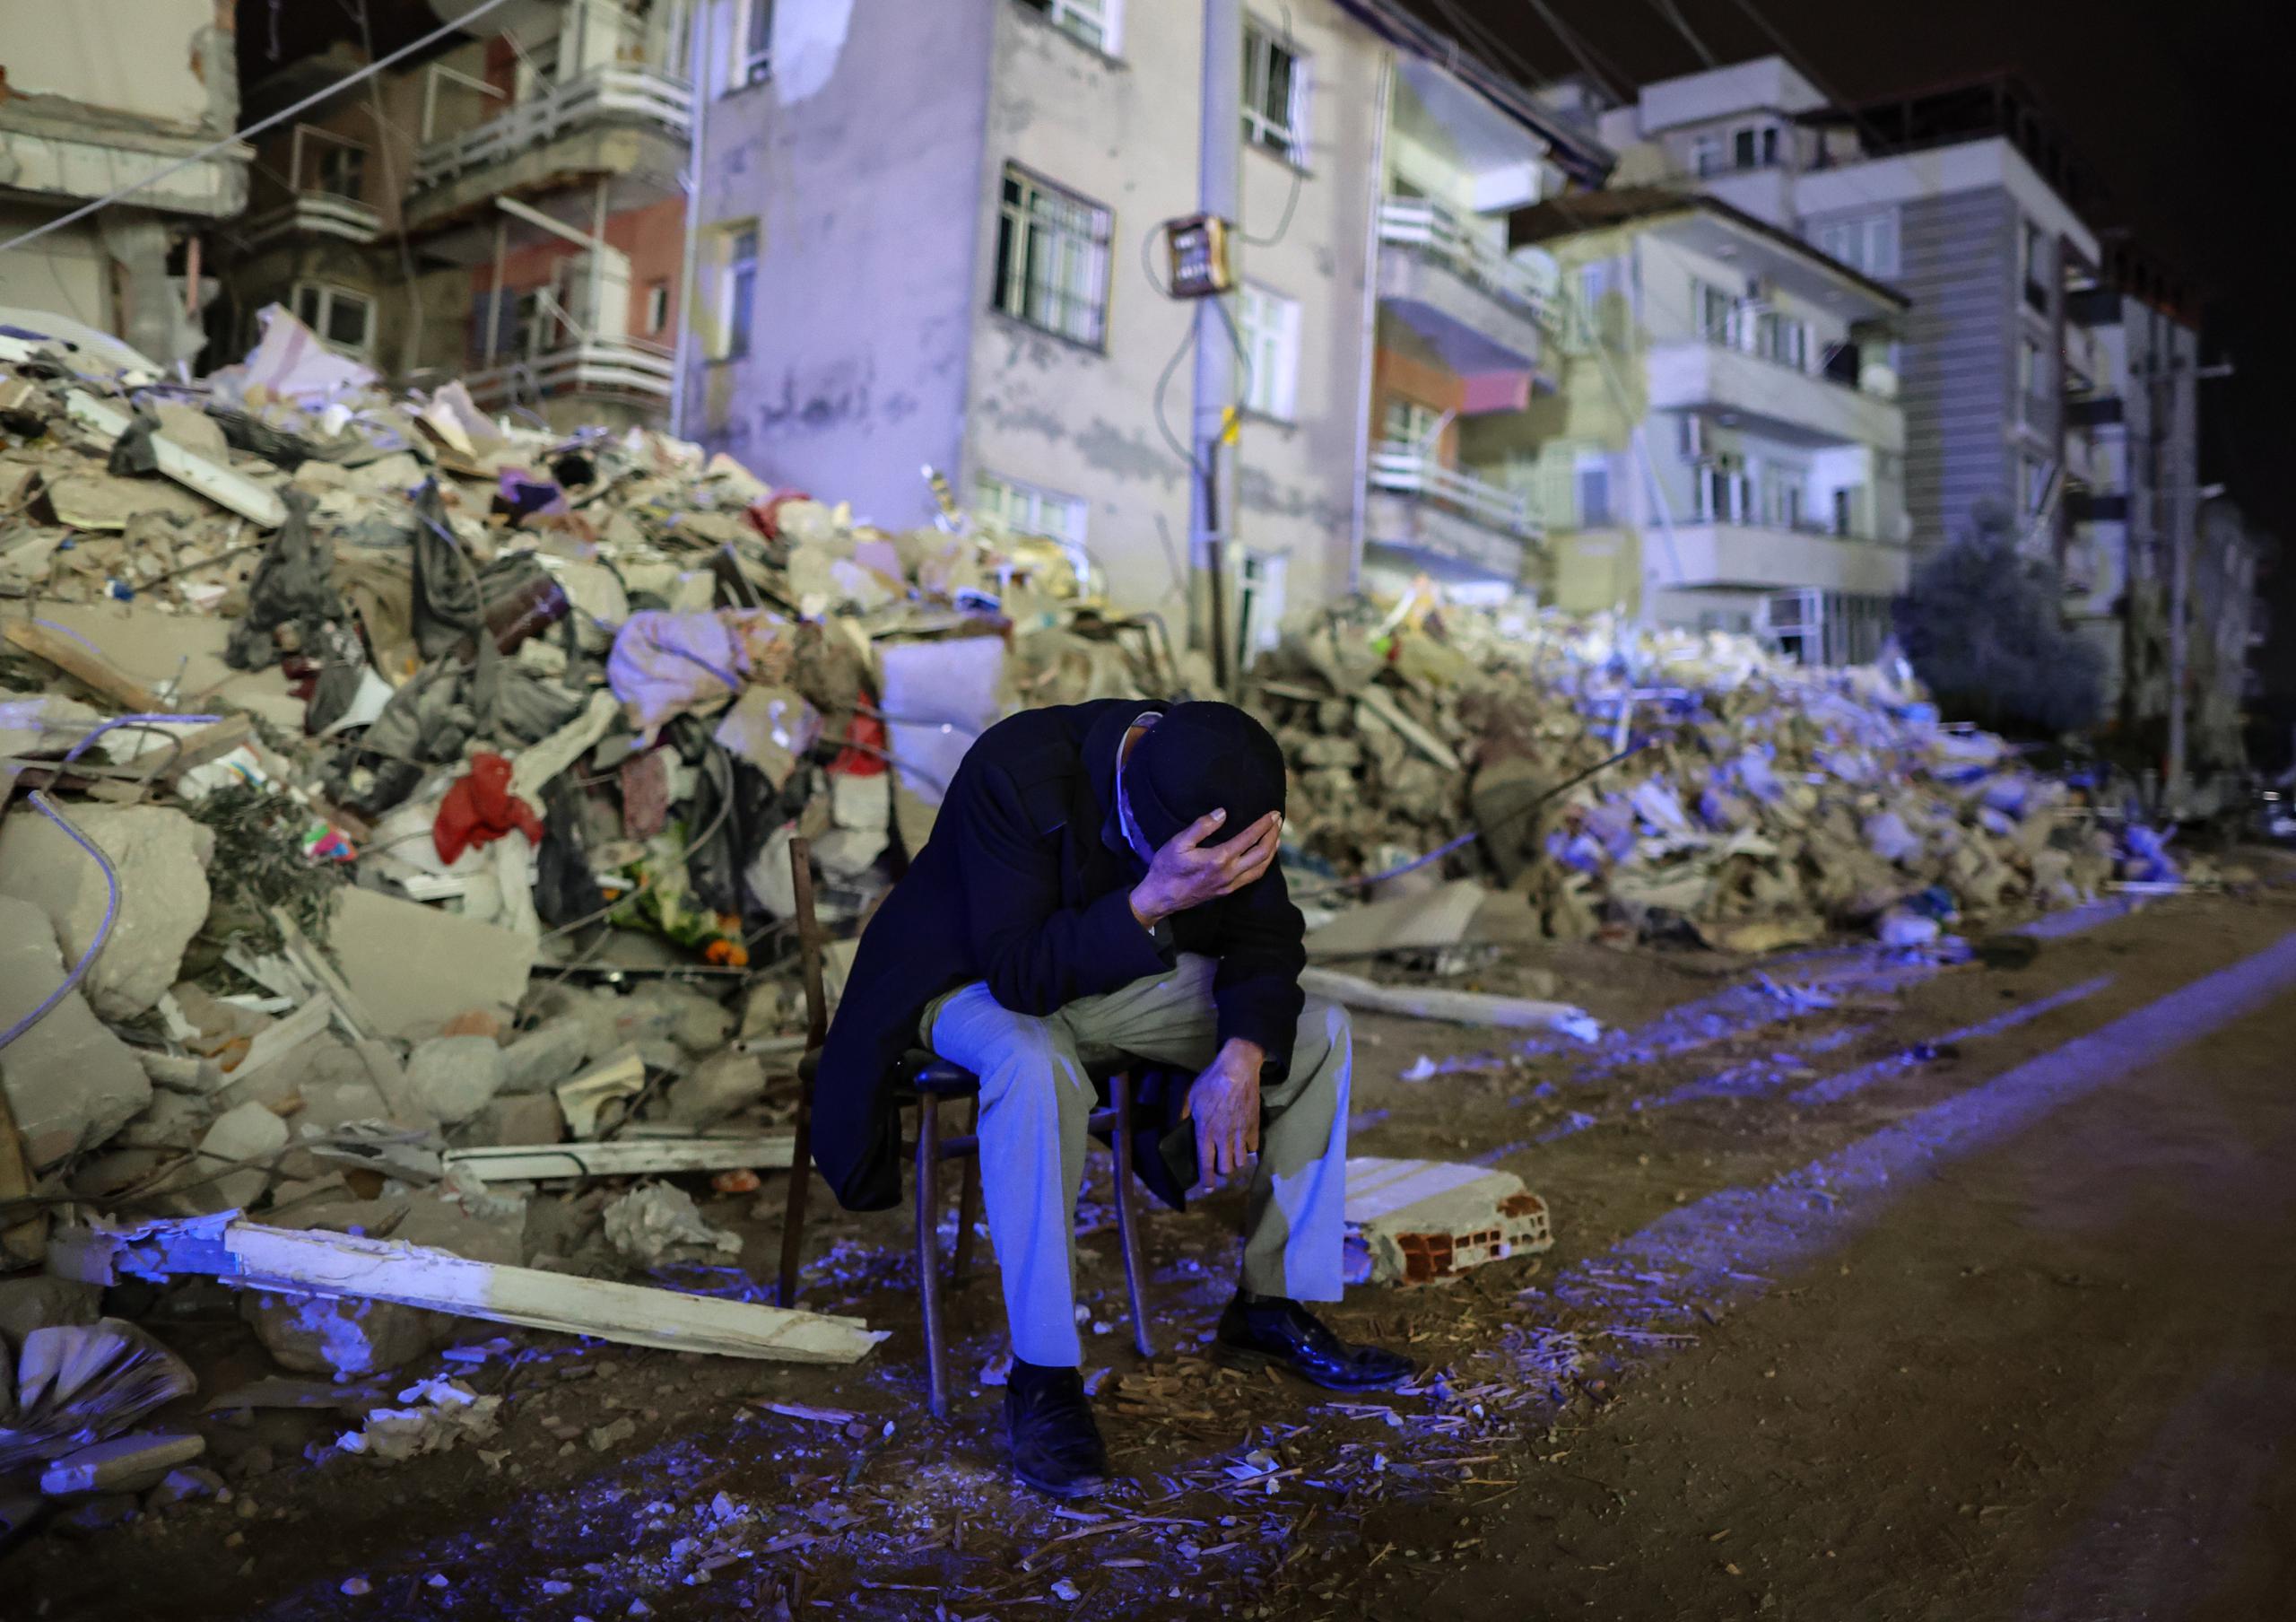 El año pasado, un devastador seísmo de magnitud 7.8 sacudió parte del sur de Turquía y la vecina Siria, causando la muerte de más de 59,000 personas.